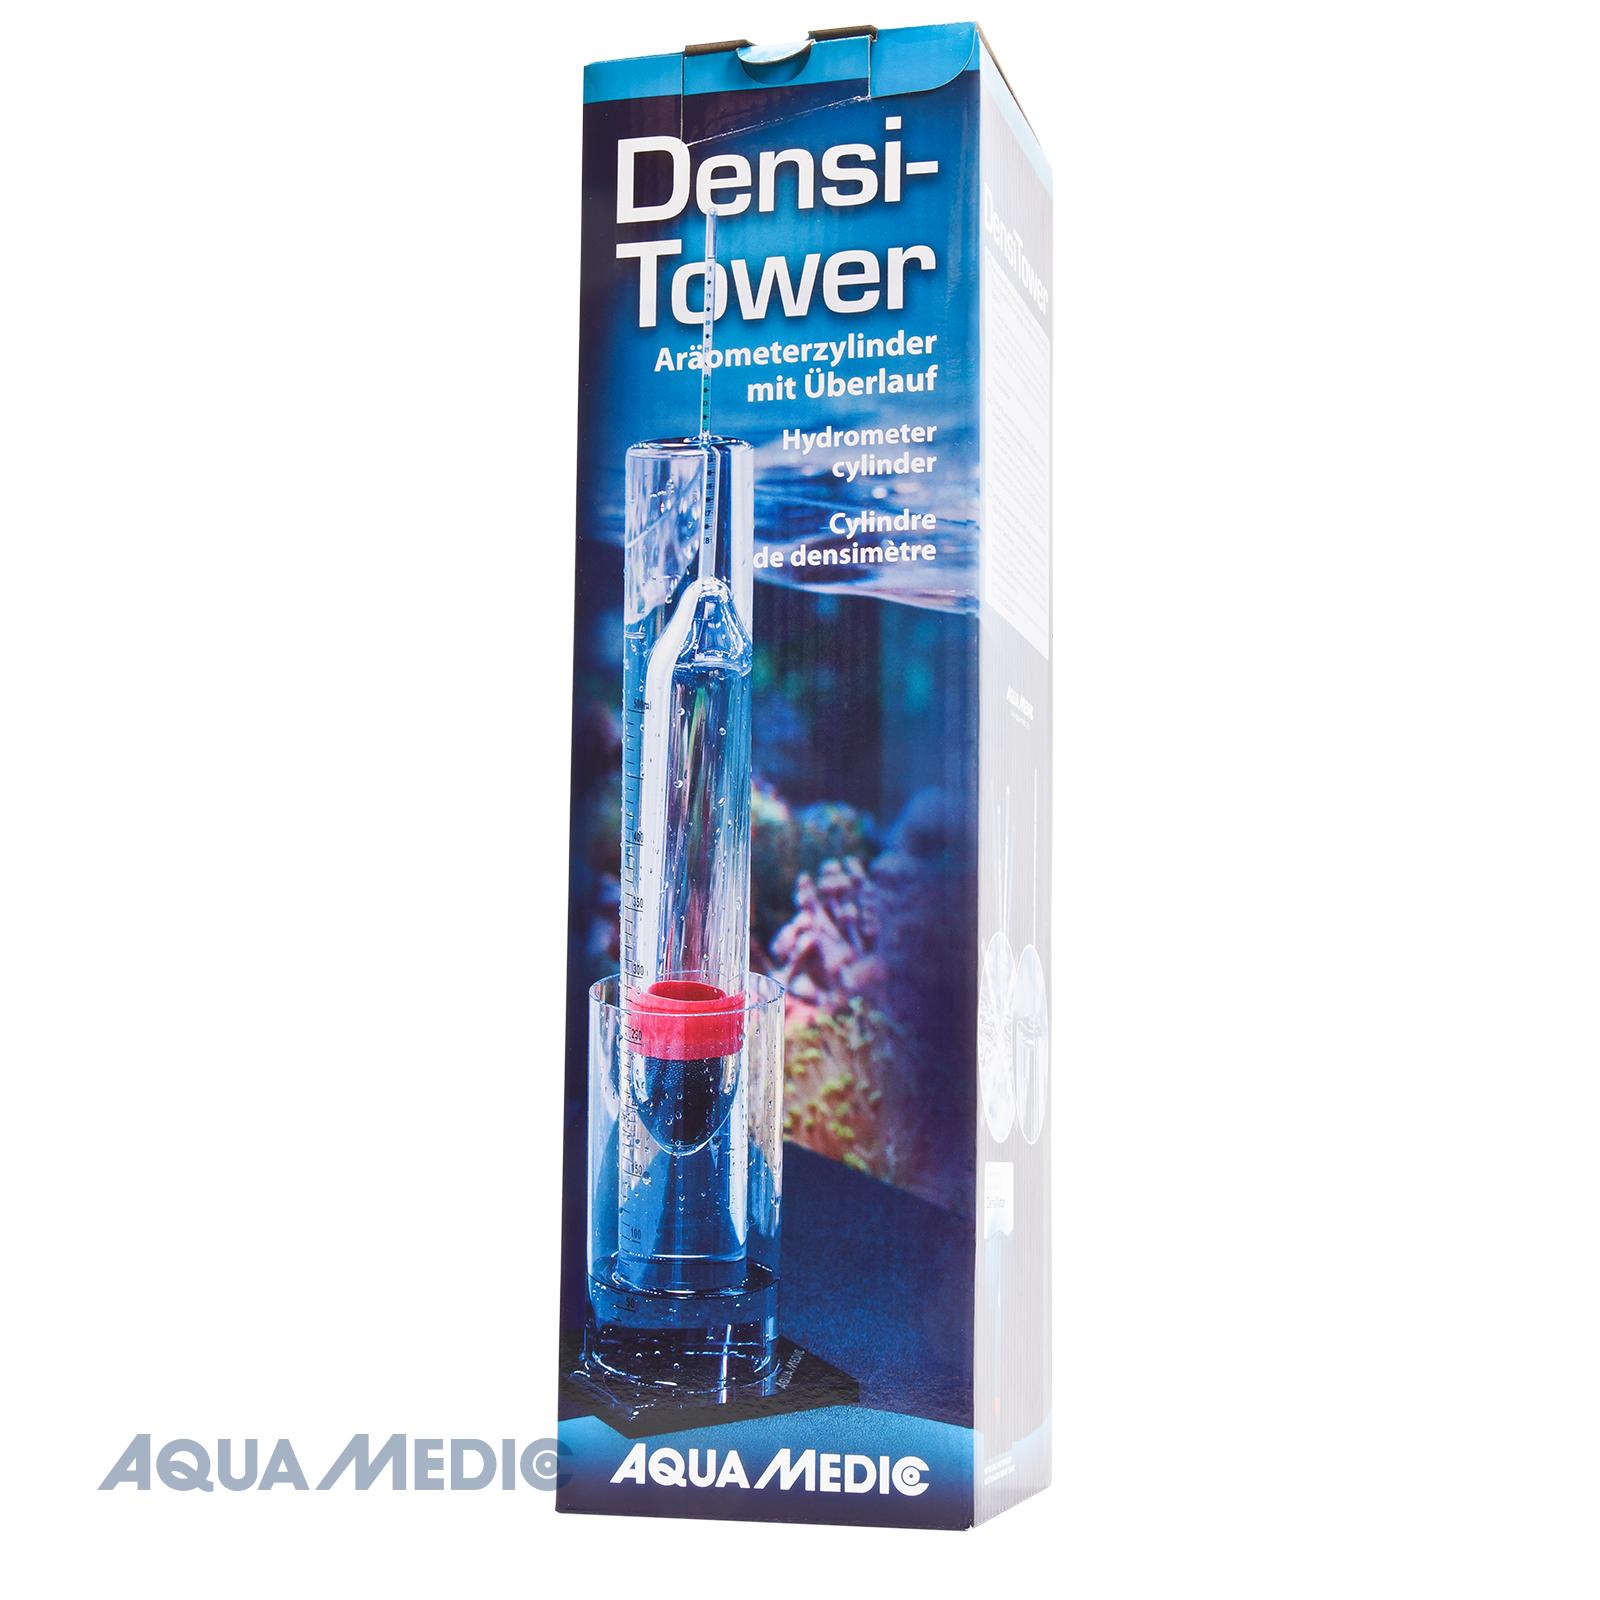 Aqua Medic densitower